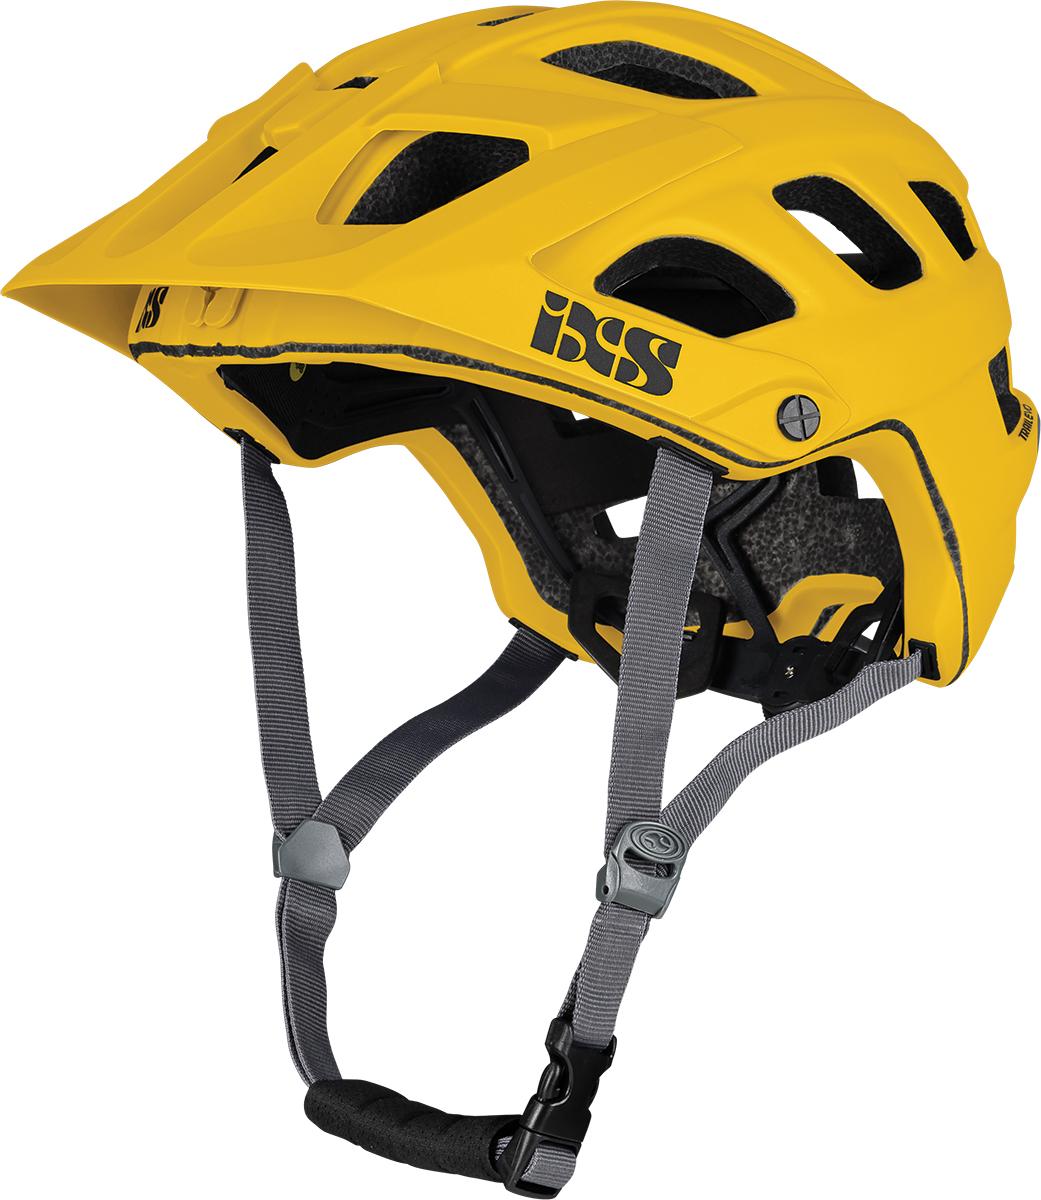 Ixs Trail Evo Mips Mtb Helmet - Saffron